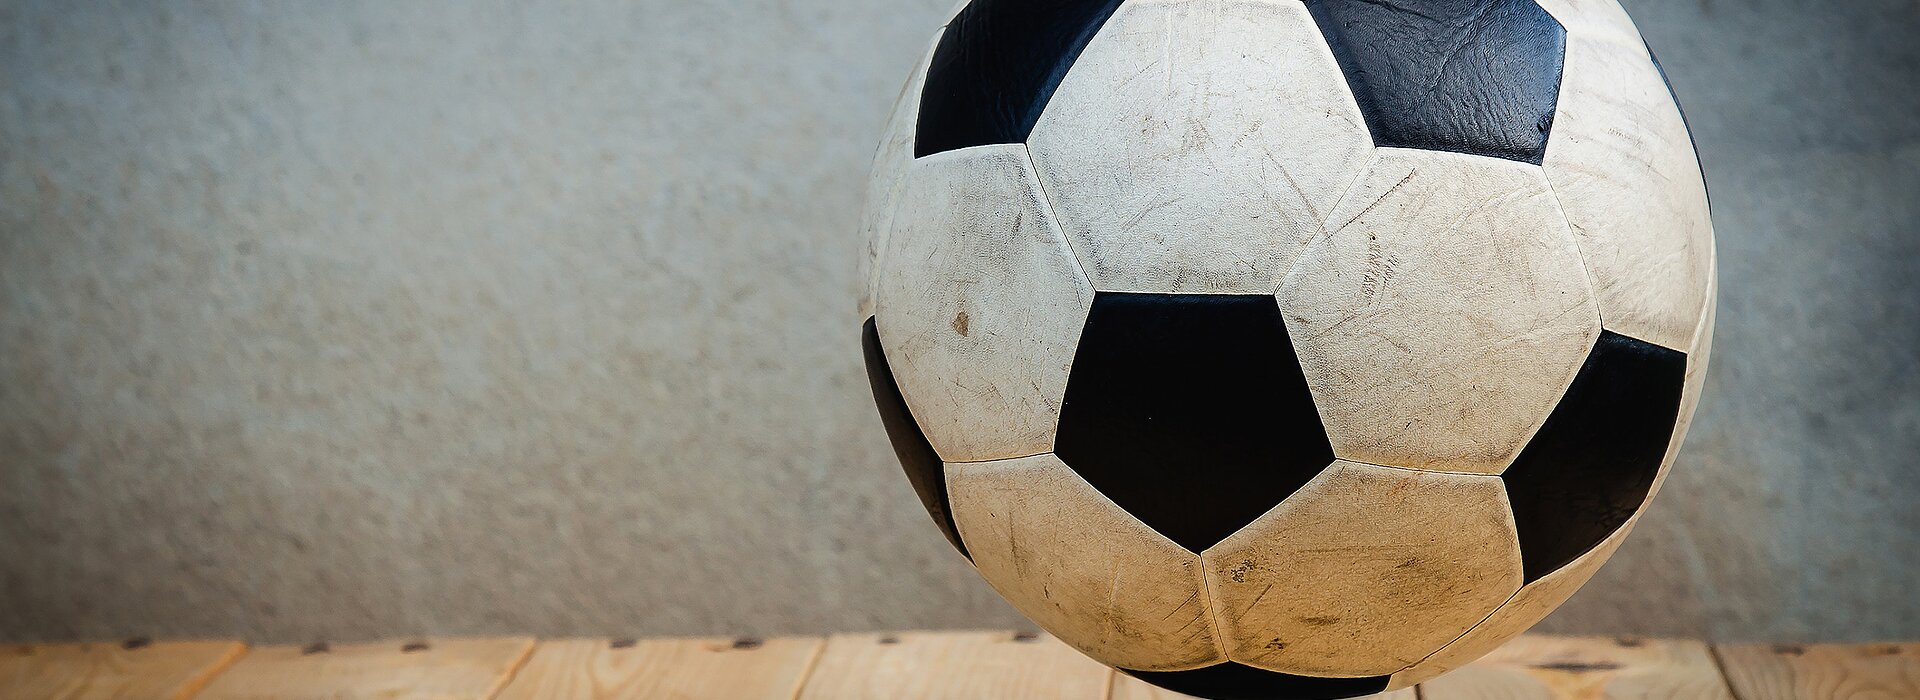 Métodos de Treinamento Físico no Futebol - Ciência da Bola